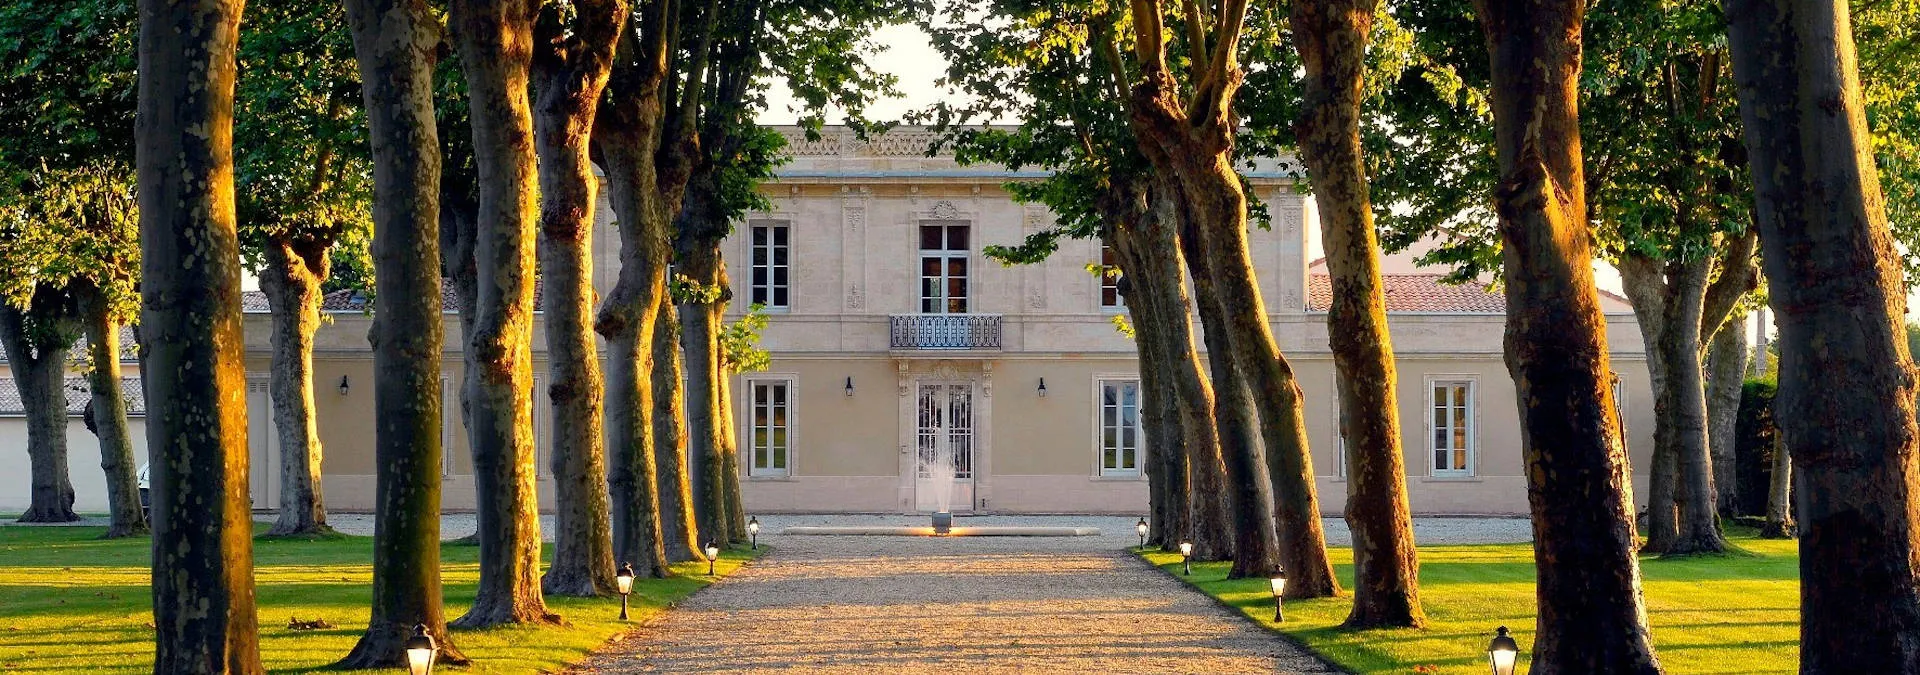 Château Haut Breton Larigaudière - Soussans